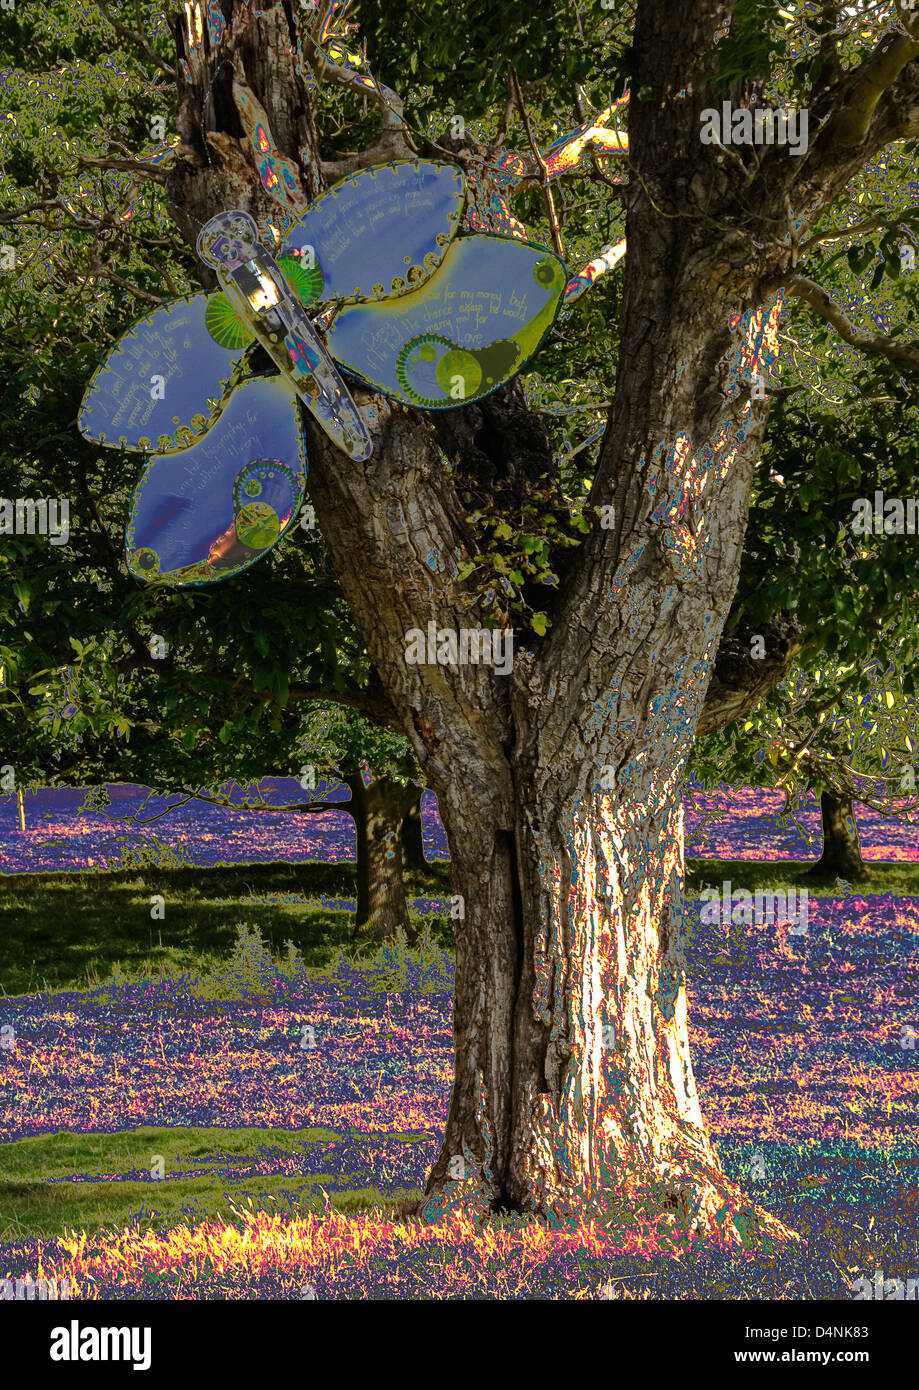 Bucks - hughenden station wagon - colorata di scultura all'aperto - falena gigante su un albero - computer interpretazione avanzata Foto Stock